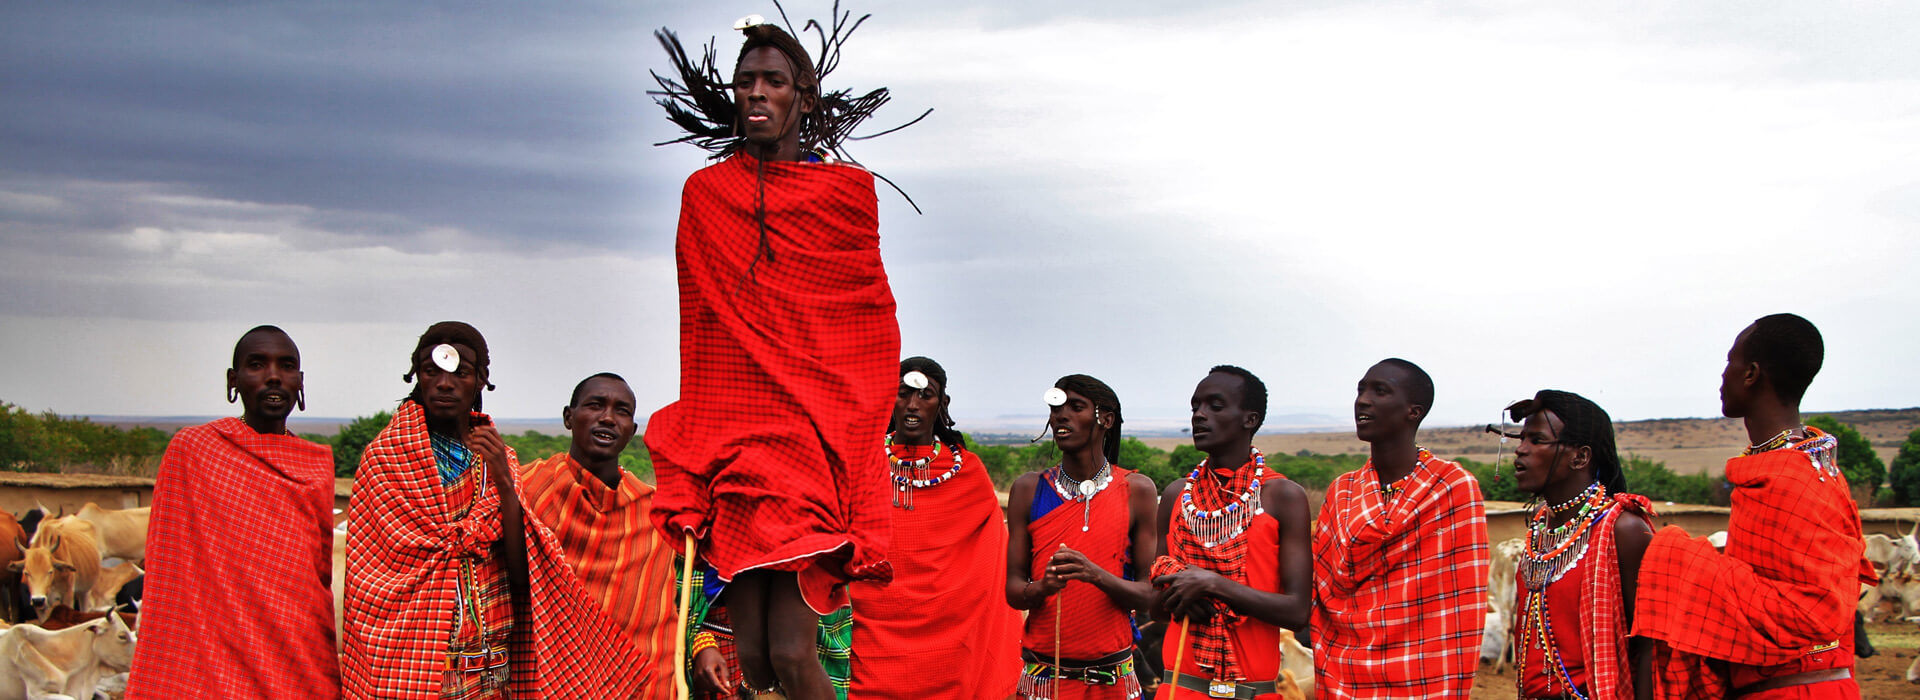 Kenya People & Culture